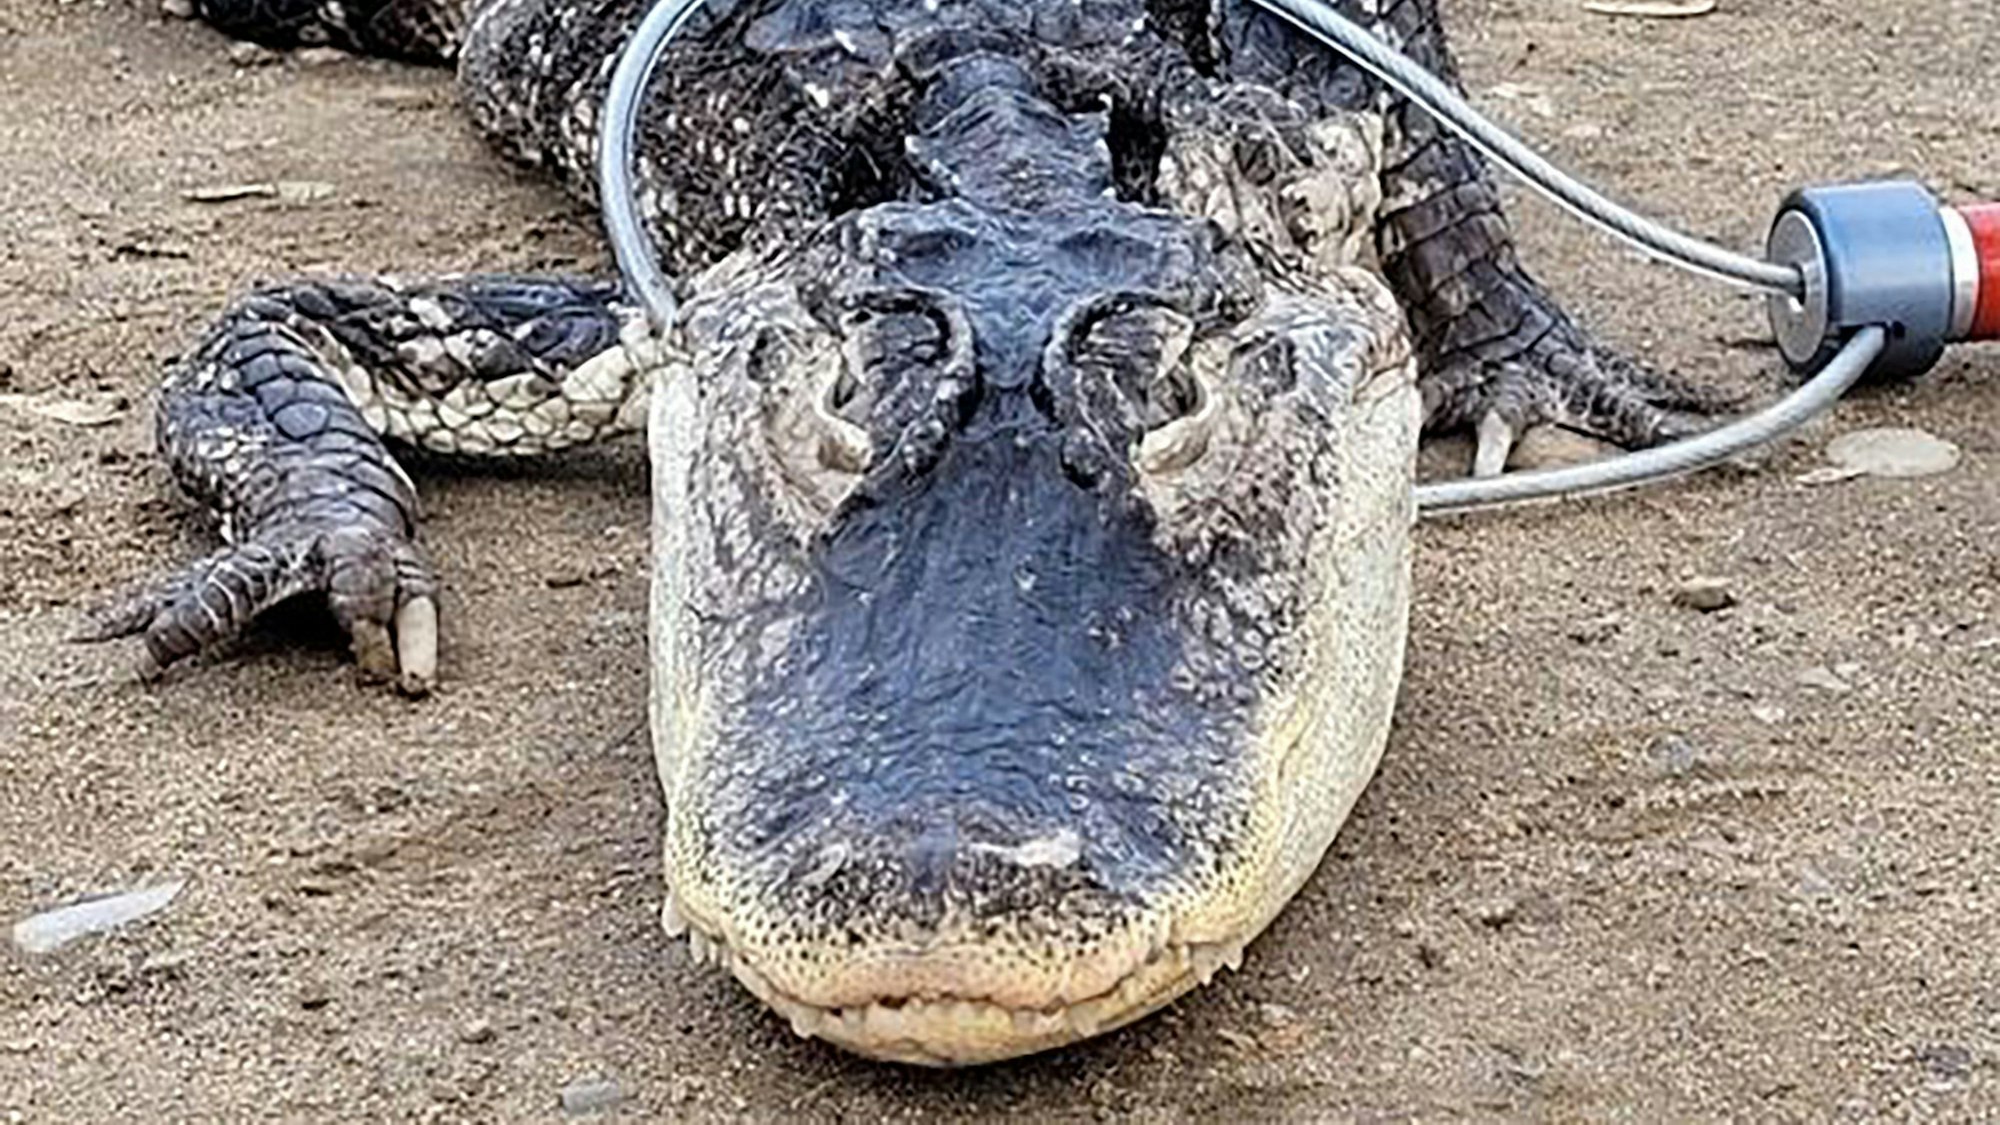 Der Alligator im Prospect Park in New York. Das Tiere wurde dort vermutlich illegal ausgesetzt.